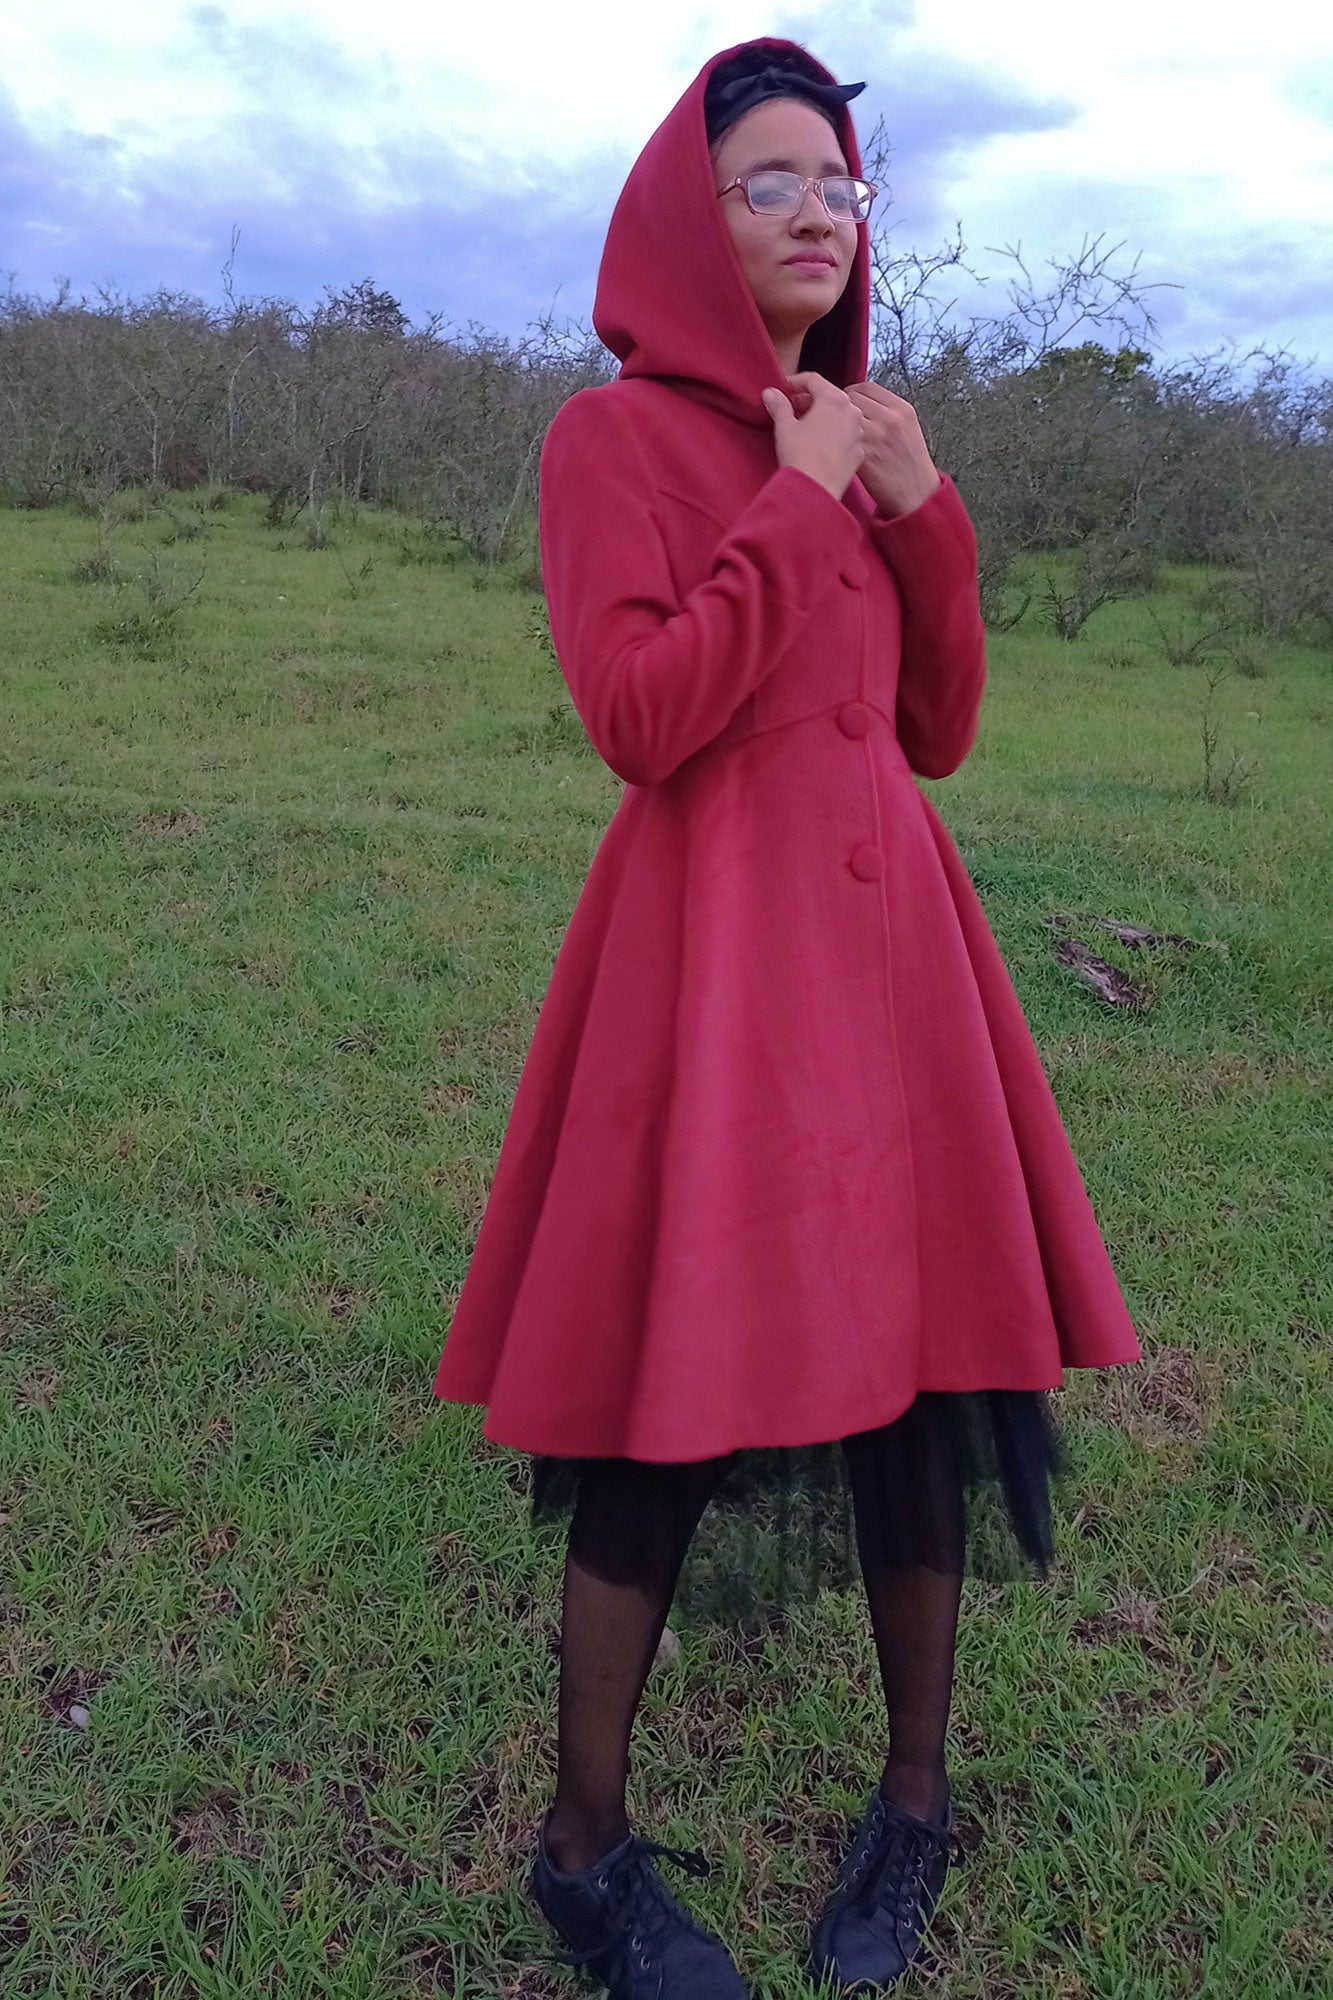 Xiaolizi Womens's Hooded Cape Coat 1130#Red / L